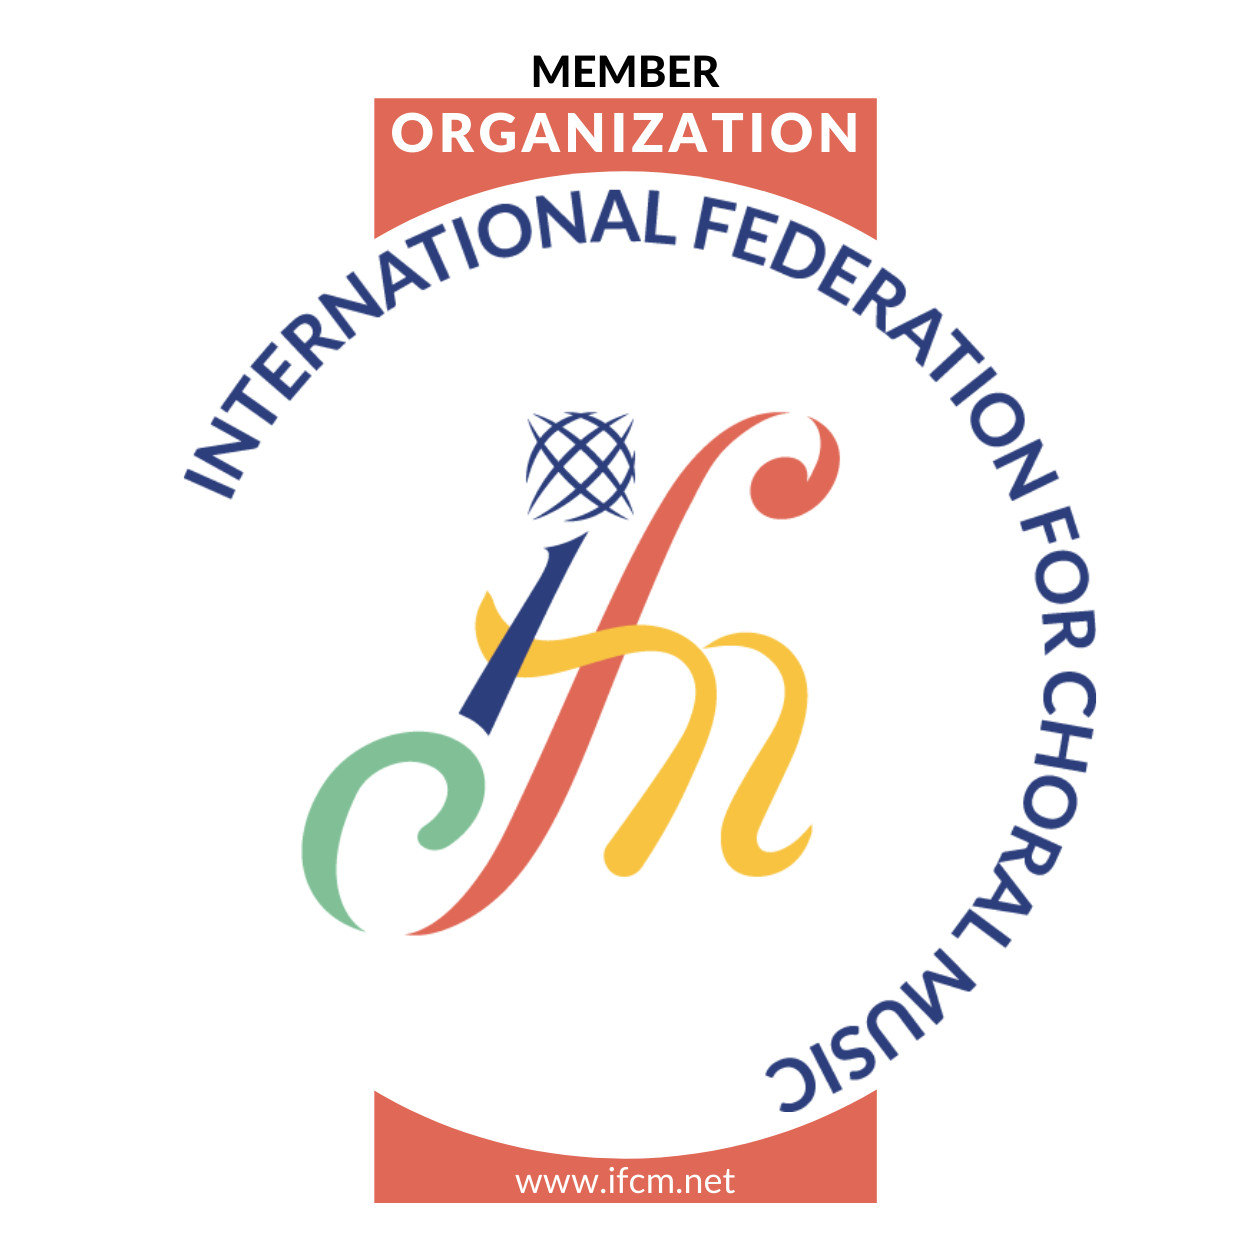 Internationale Föderation für Chormusik (IFCM)